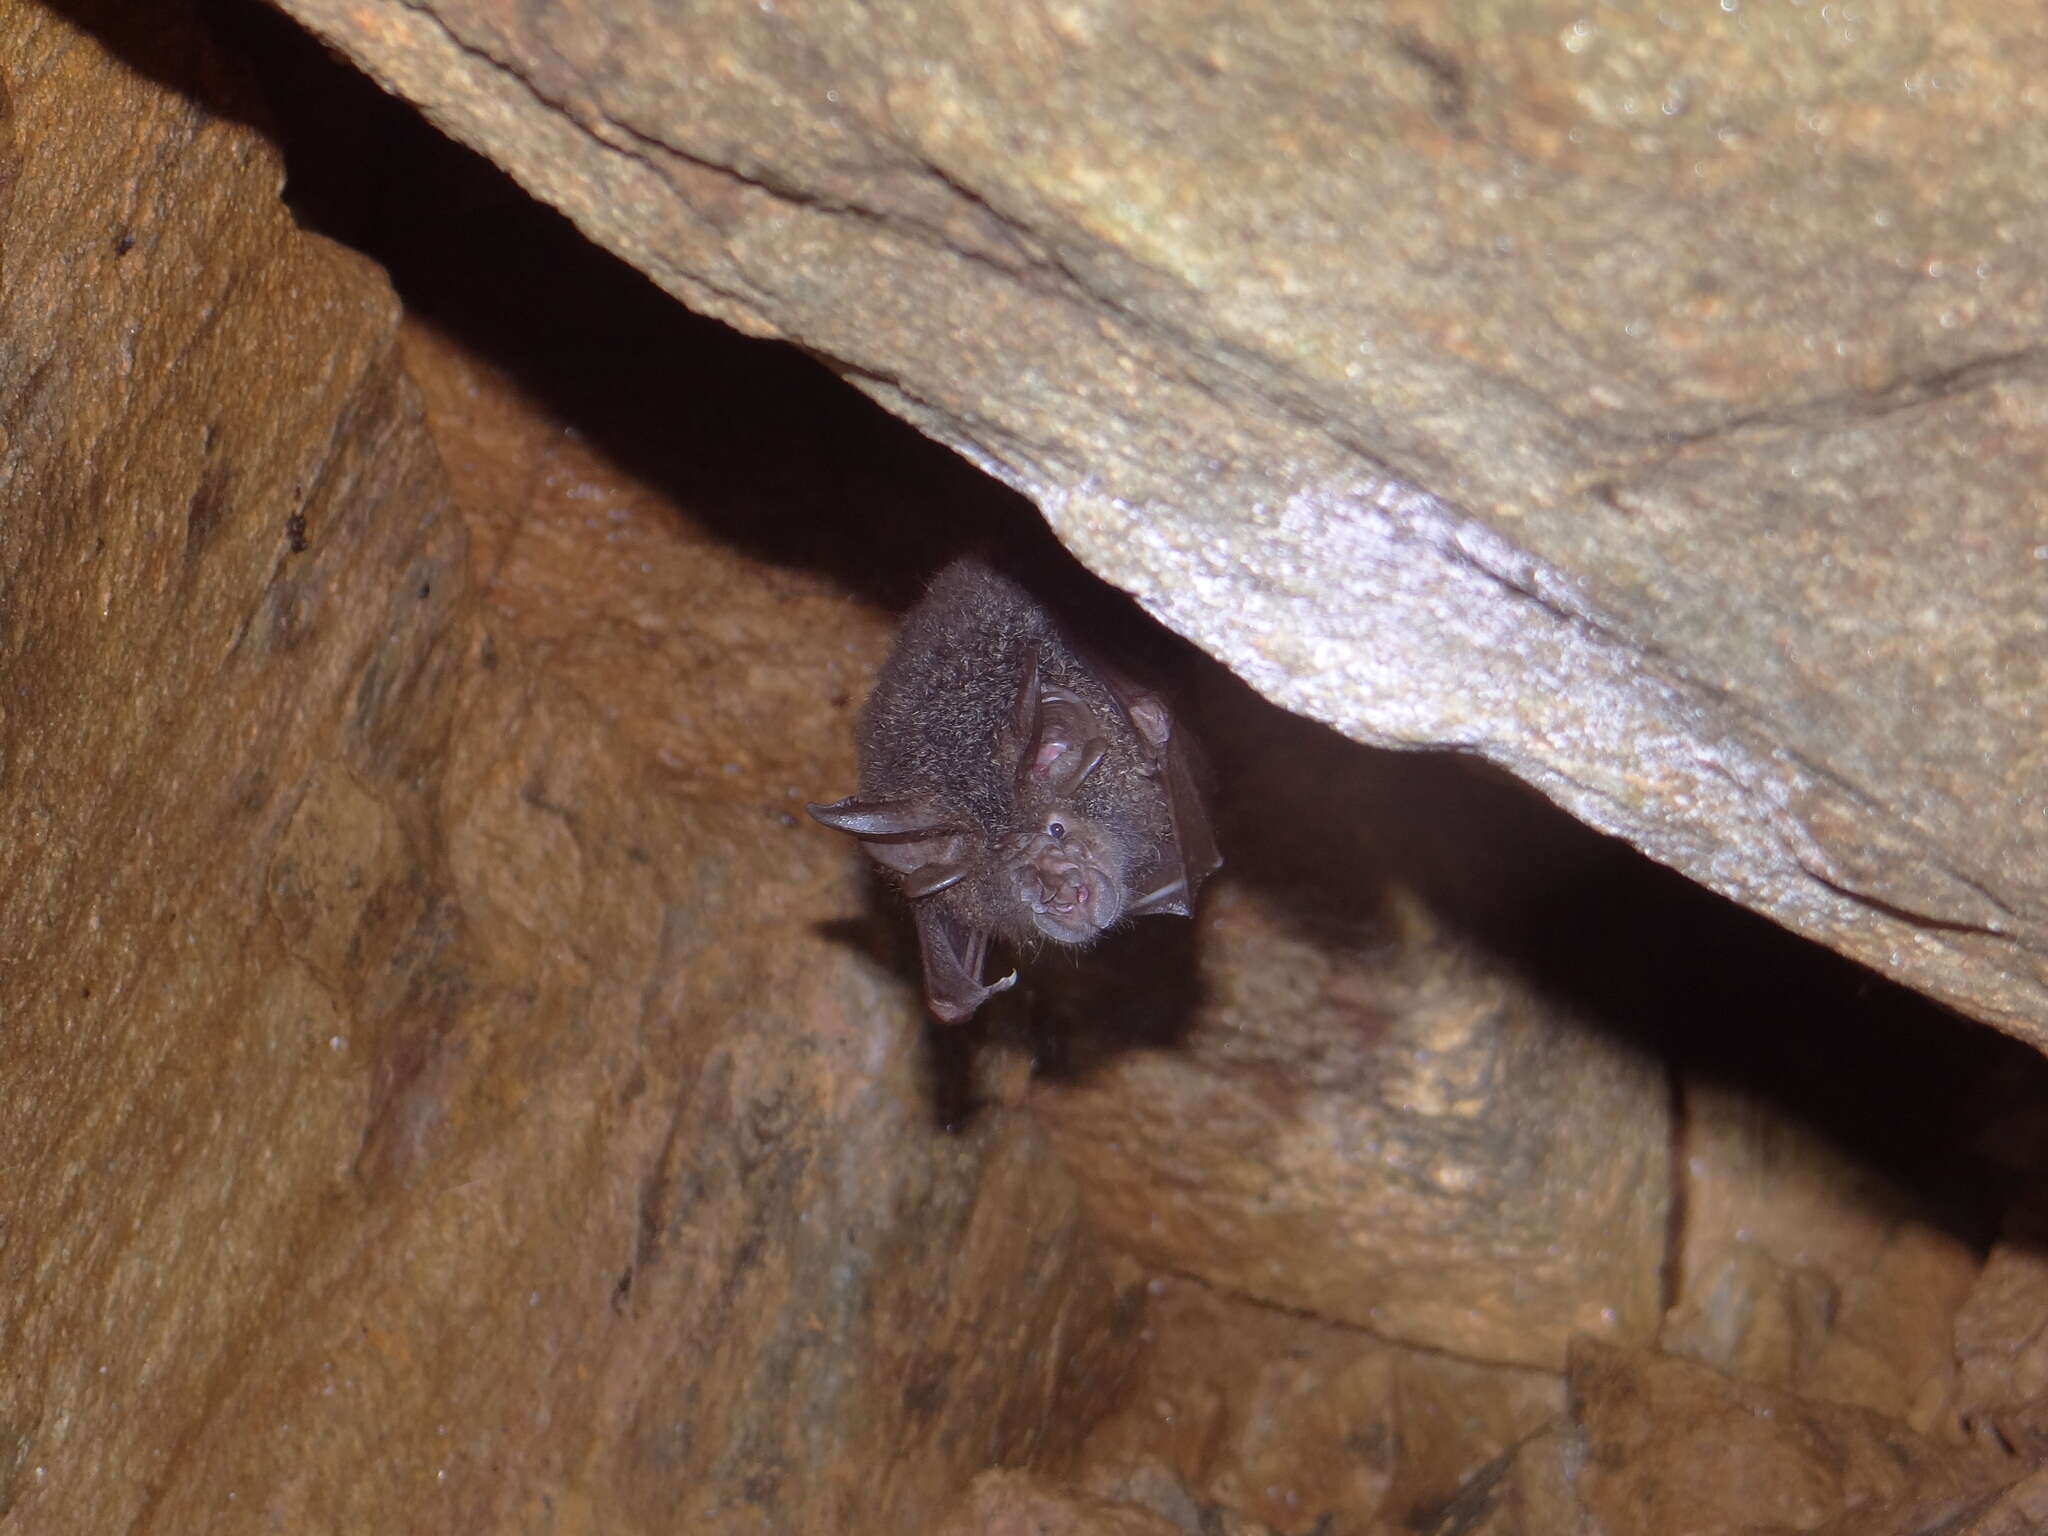 Image of Beddome's Horseshoe Bat